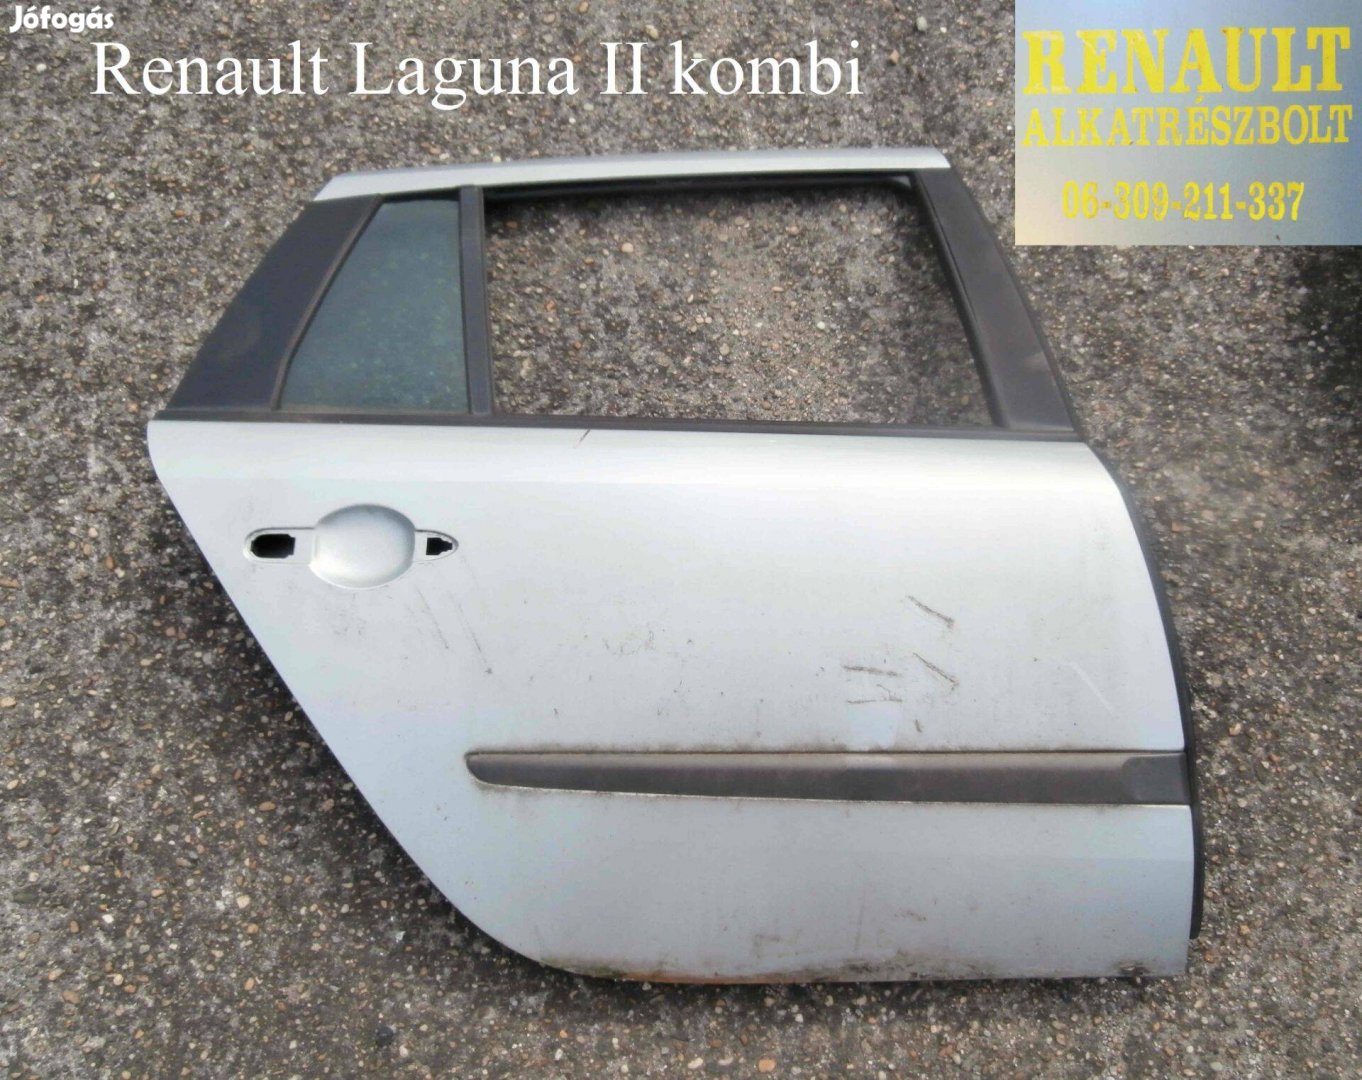 Renault Laguna II kombi jobb hátsó ajtó